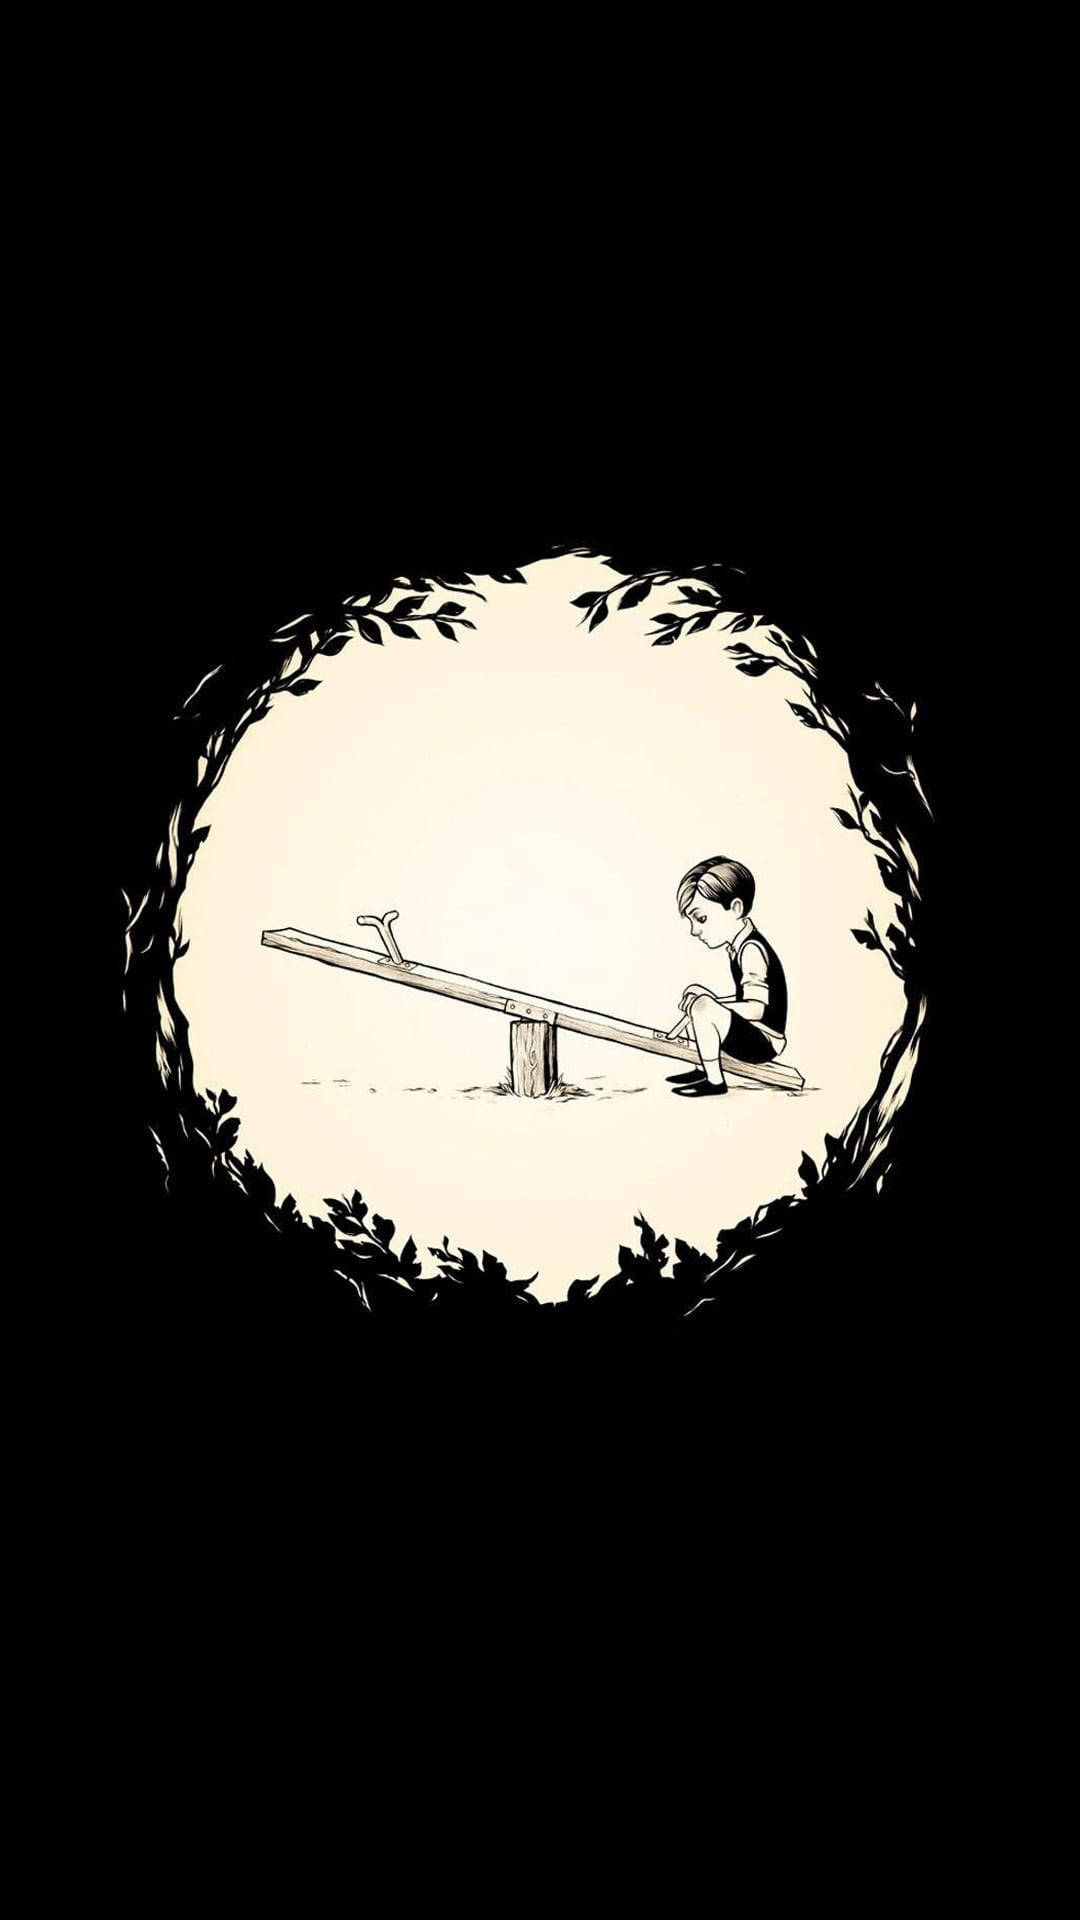 Arteúnico De Un Triste Dibujo Animado De Un Niño En Un Columpio. Fondo de pantalla